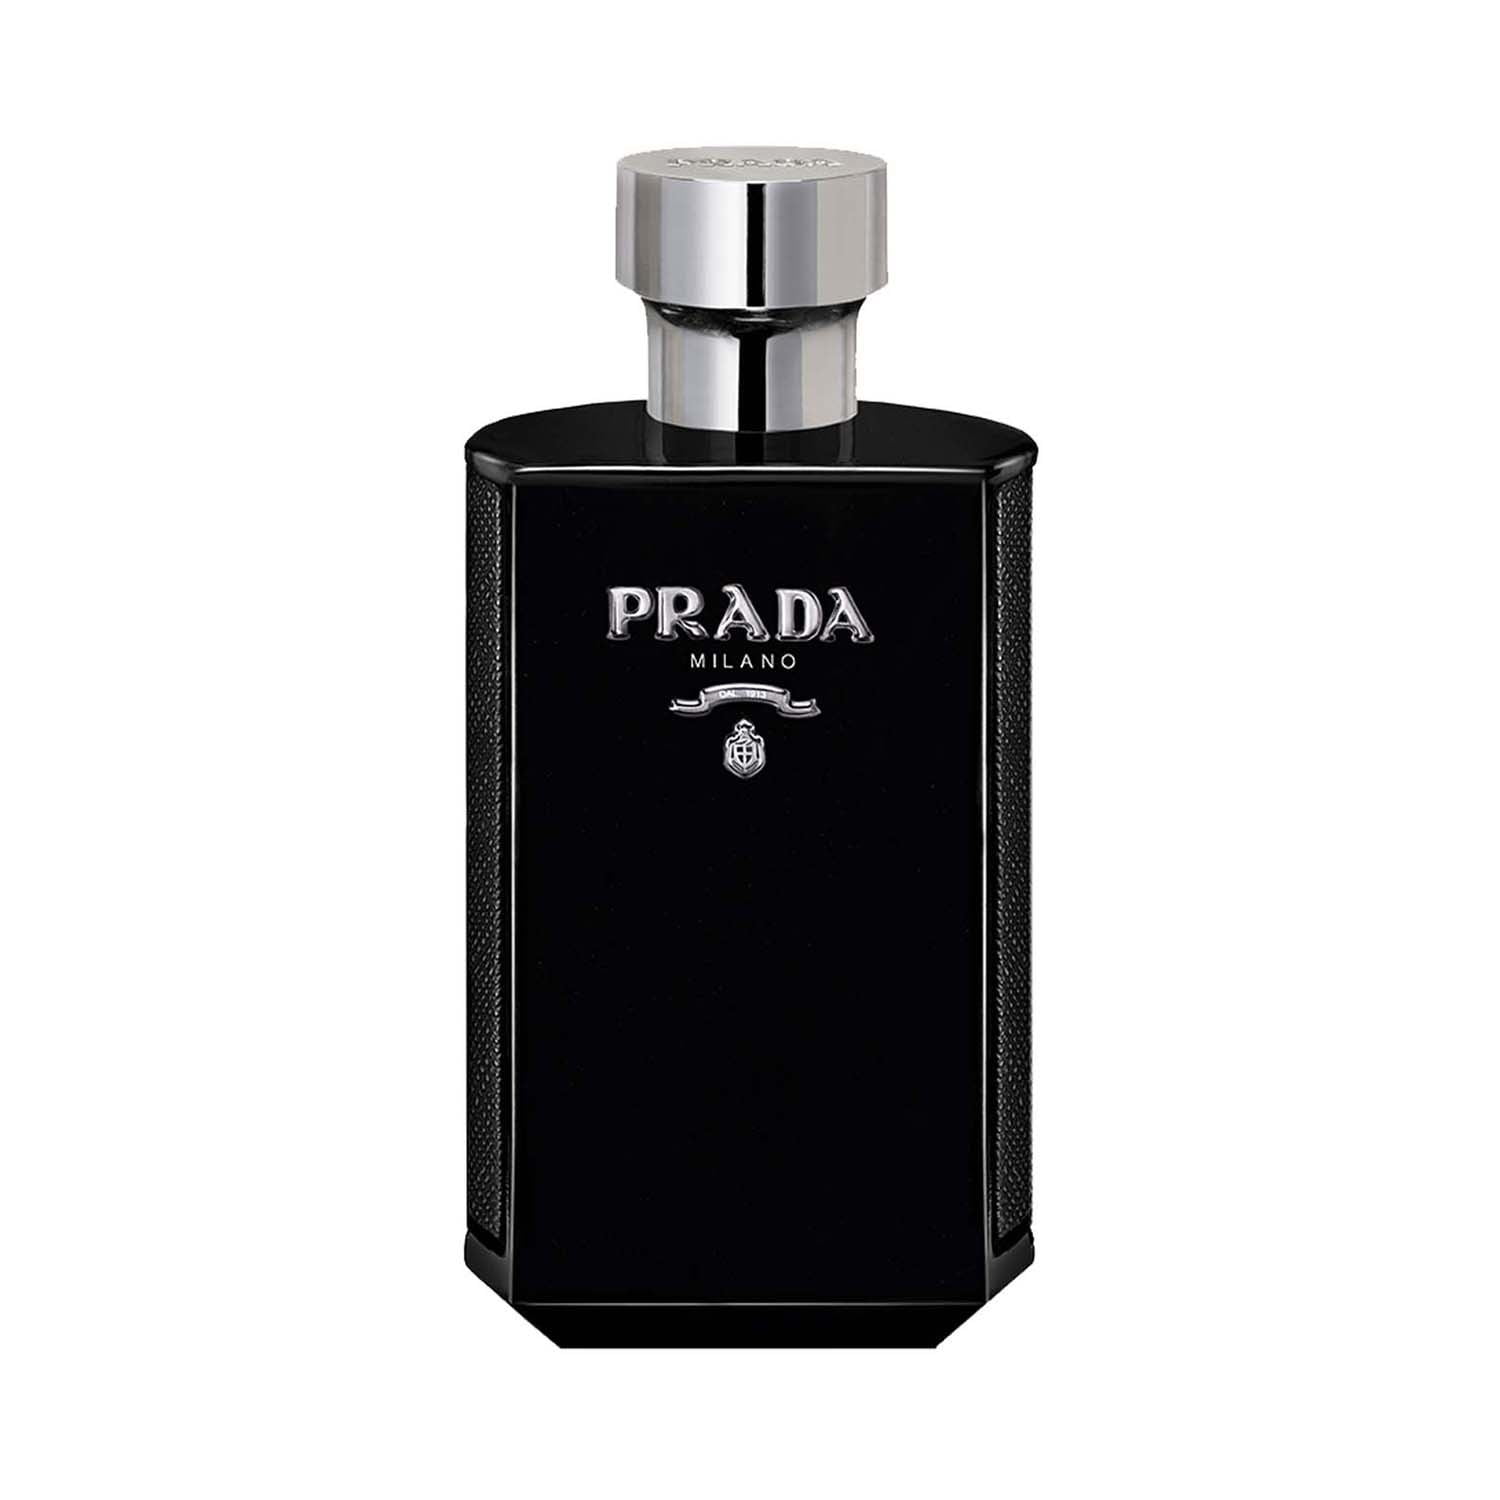 普拉达 绅士轻绒版 Prada L'Homme Velvet Edition|香水评论|香调|价格|味道|香评|评价|-香水时代NoseTime.com